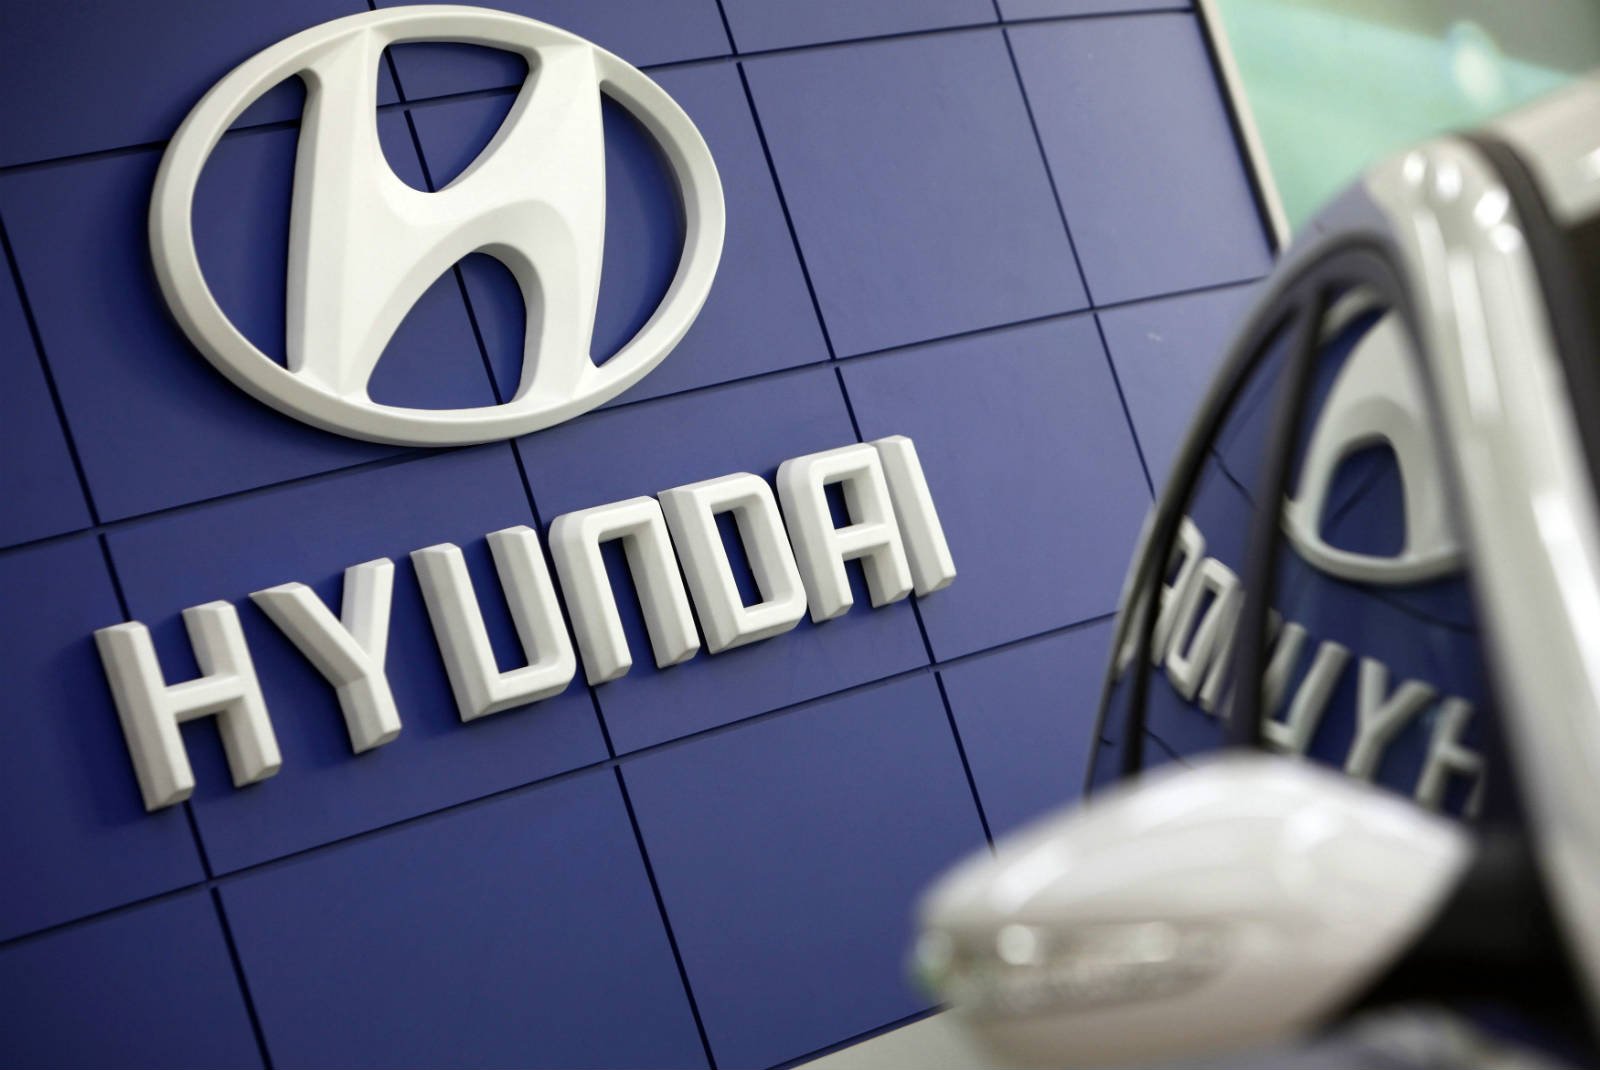 Компания Hyundai Motor перешла в режим экономии